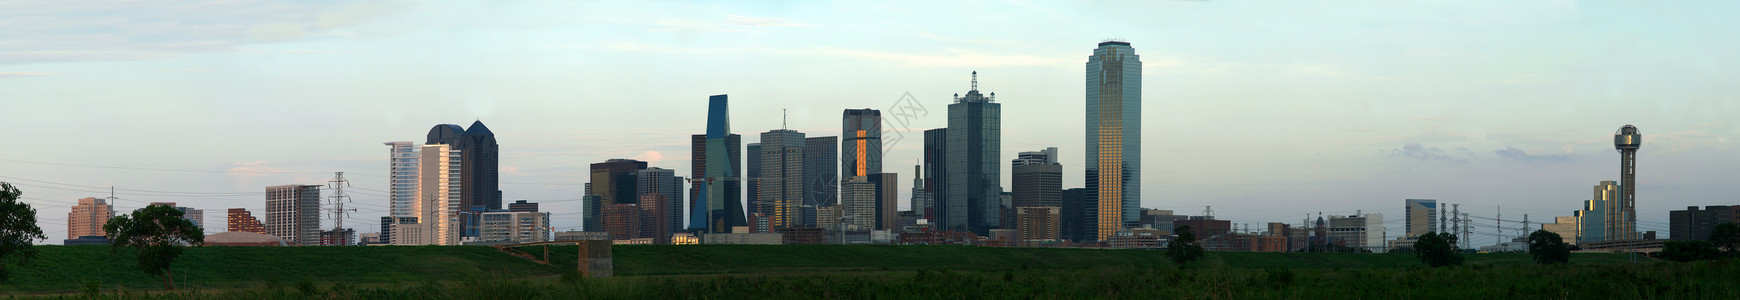 德克萨斯州景观得克萨斯州达拉斯市下城景观办公室市中心地铁团圆摩天大楼城市建筑学商业都市背景